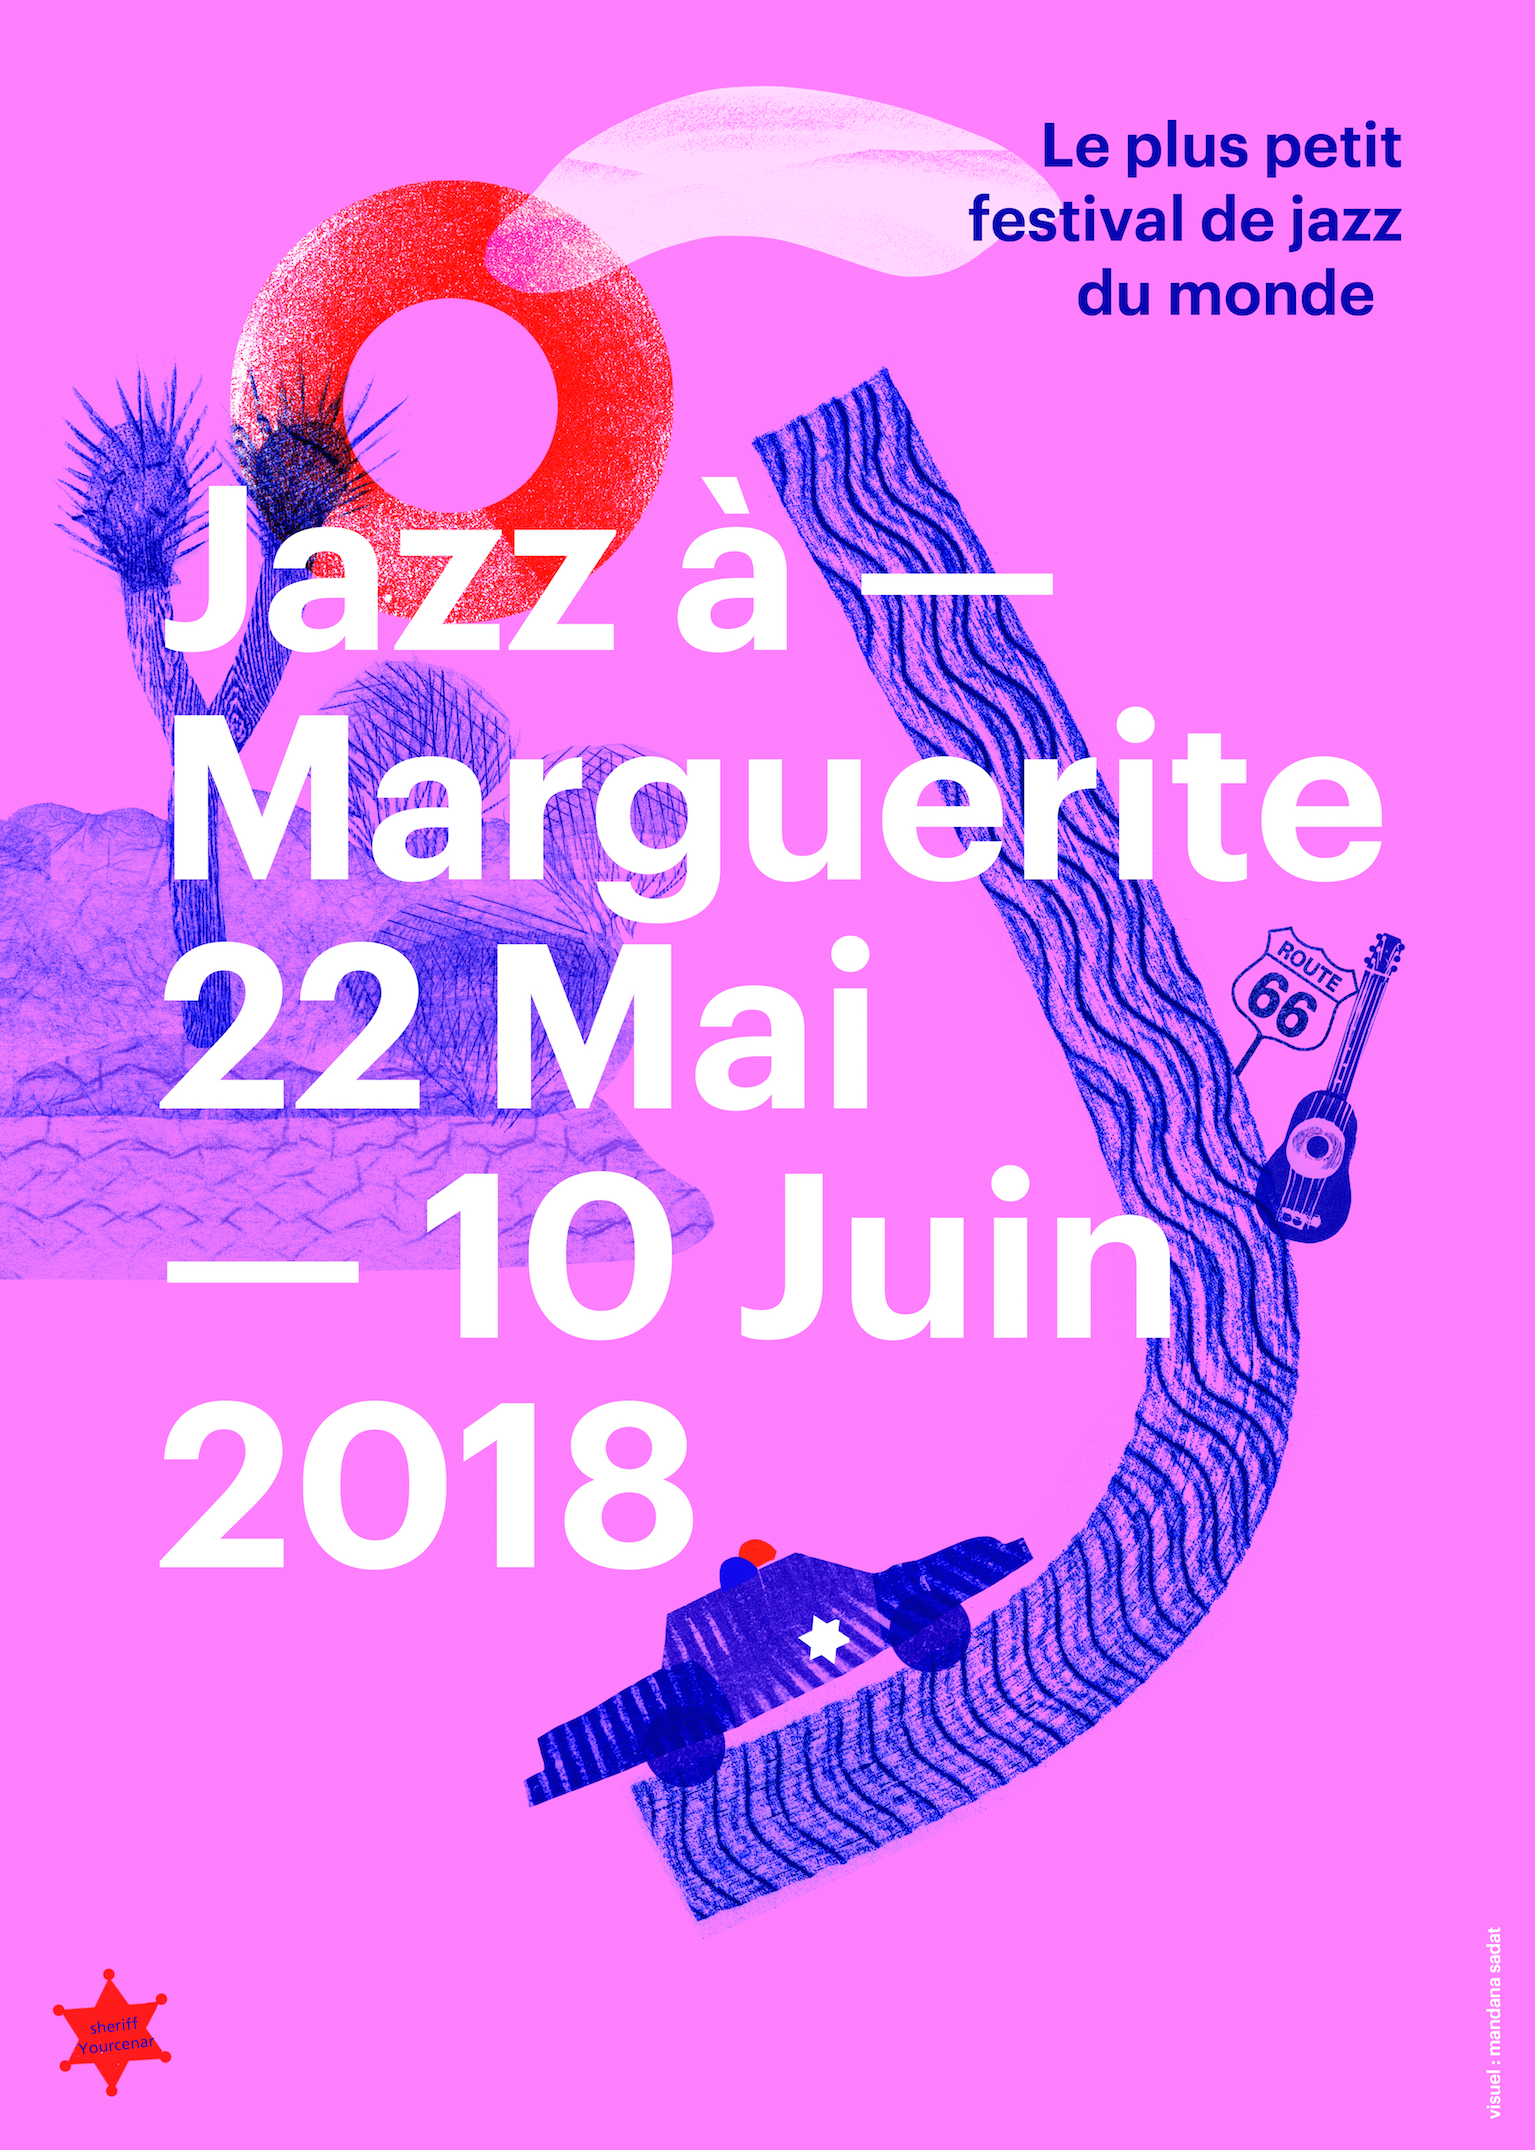 Jazz à Marguerite 2018